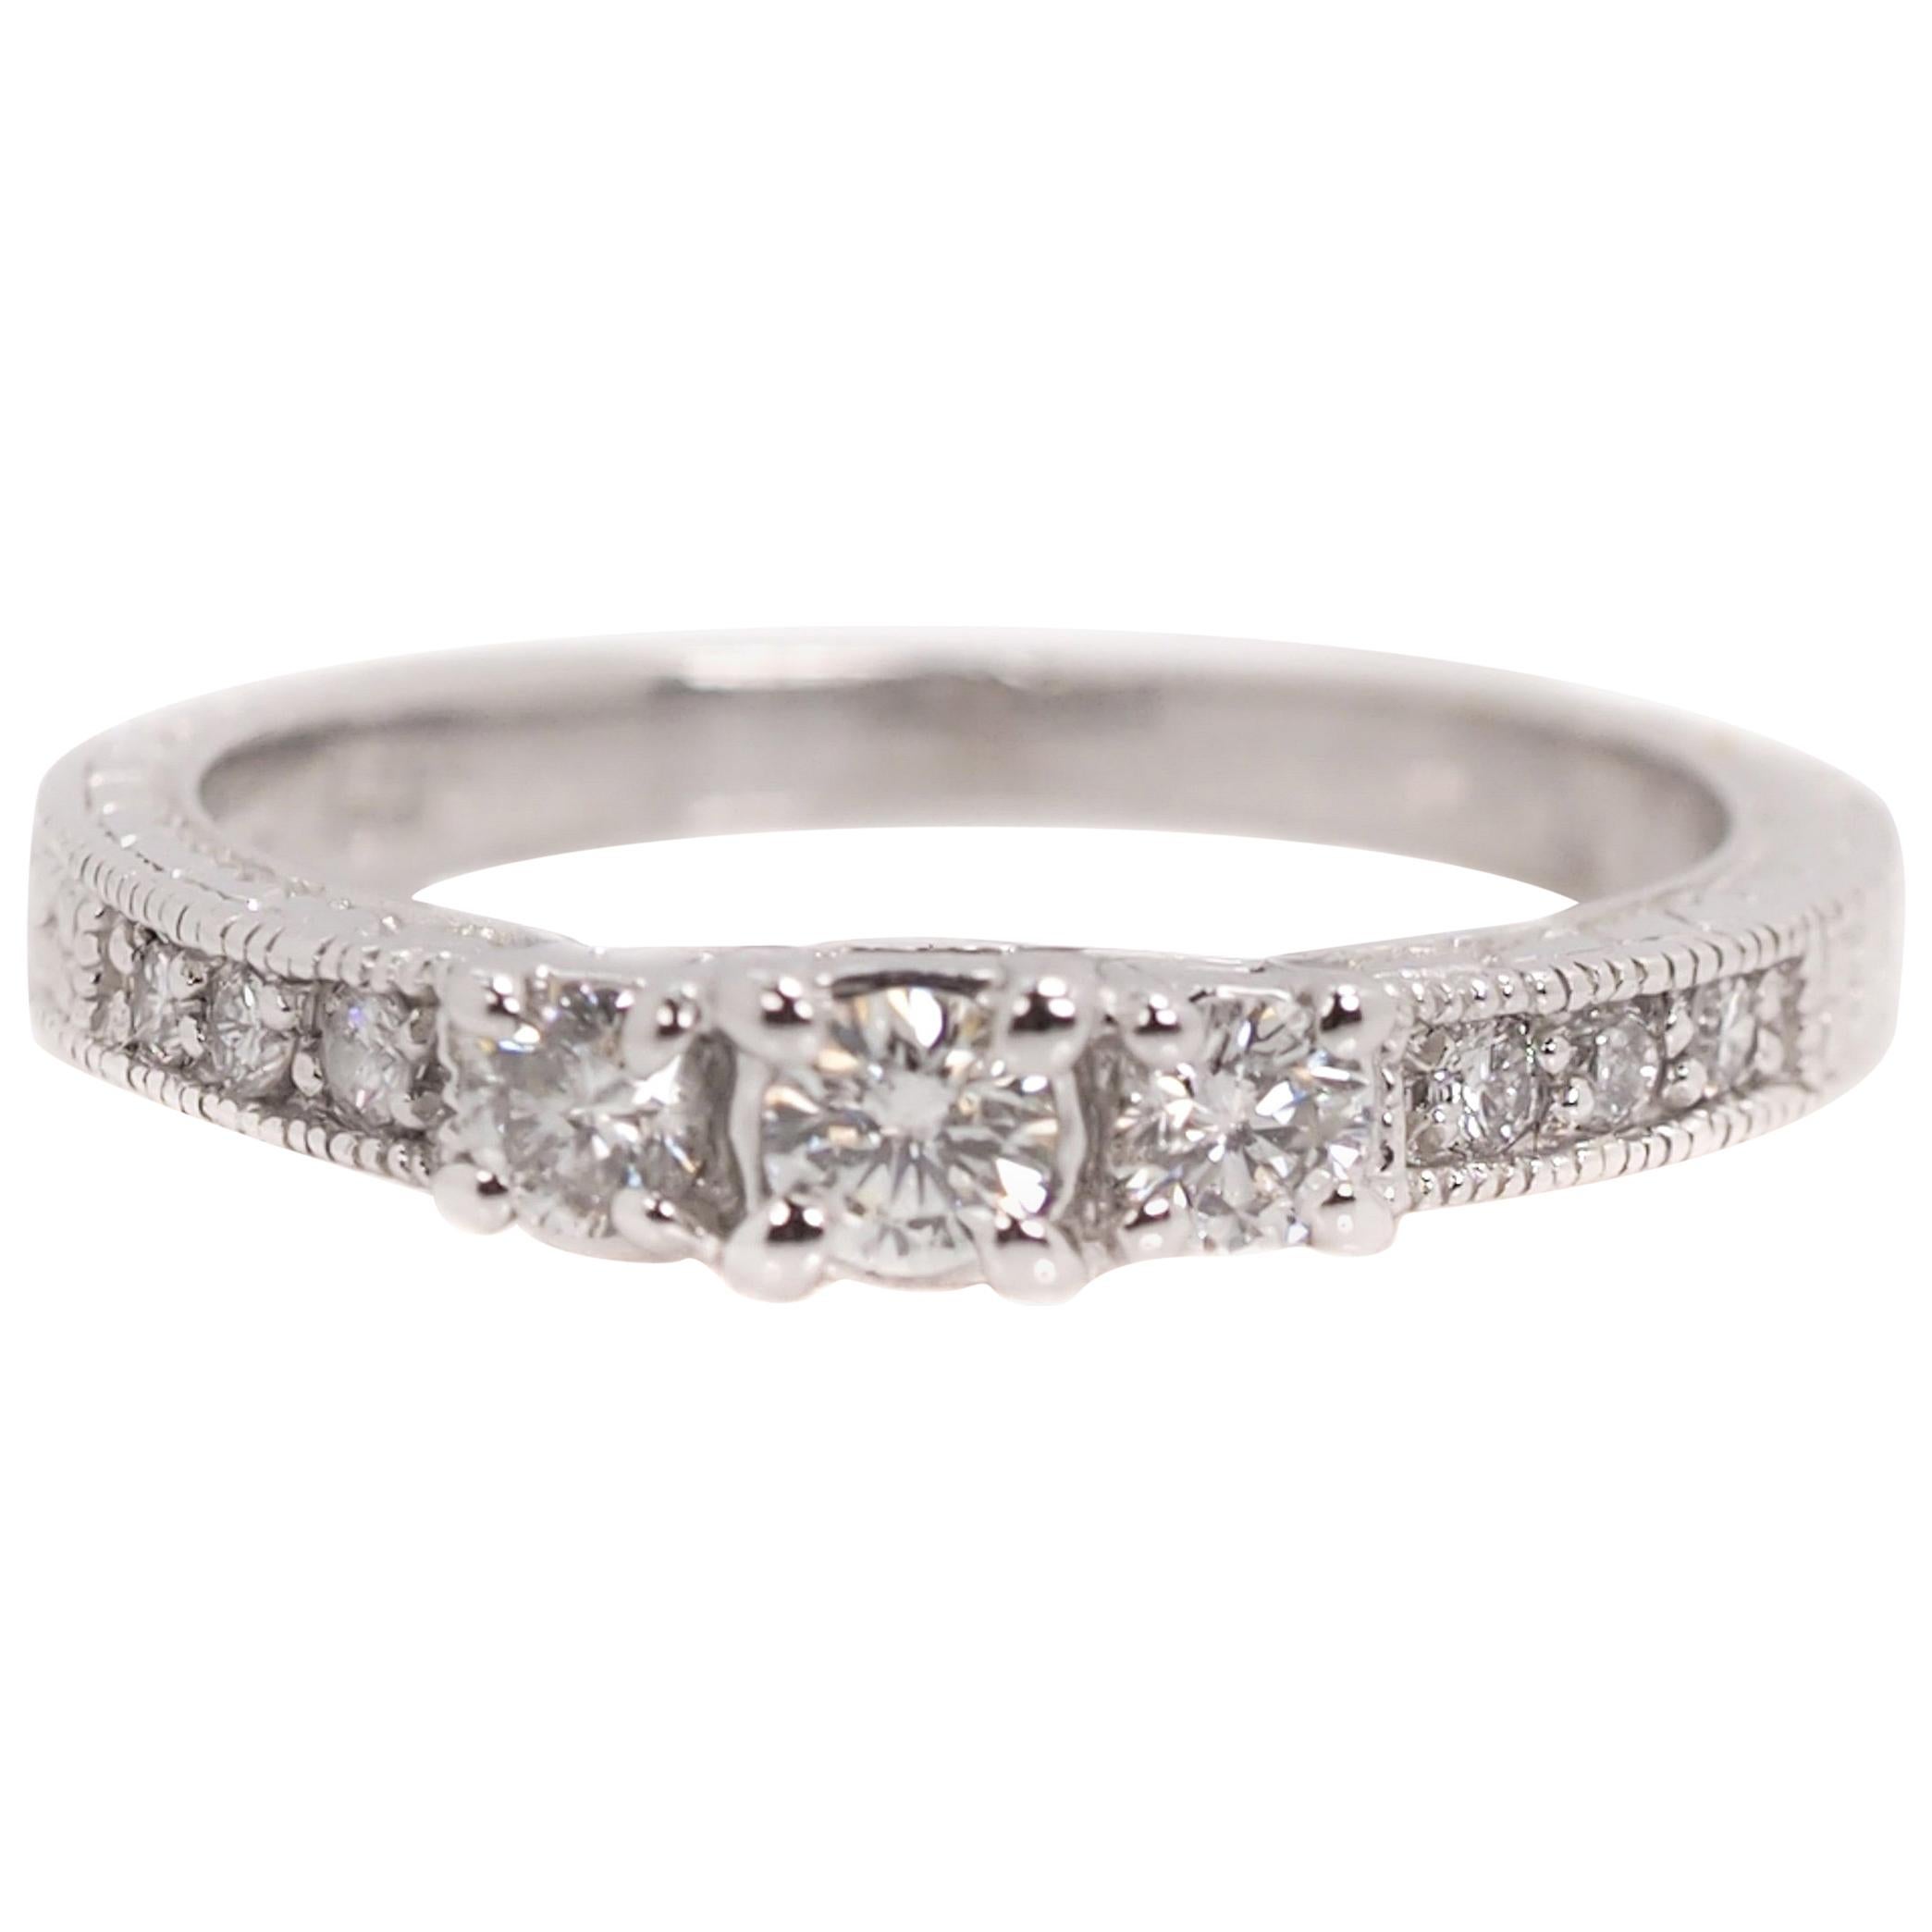 0.25 Carat Diamond and 14 Karat White Gold Vintage Inspired Engagement Ring